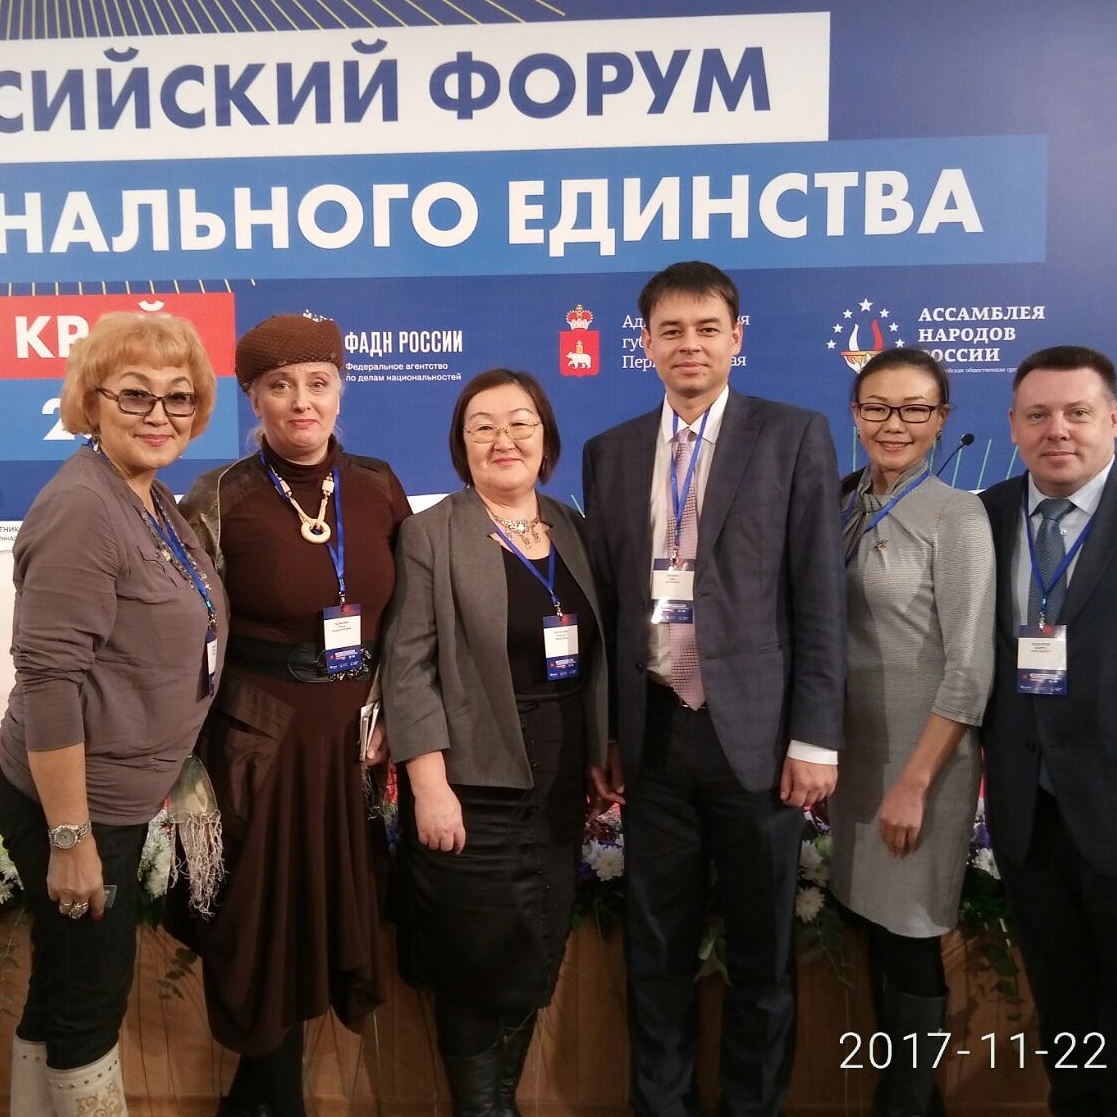 Это успех! Якутяне заняла все призовые места на Всероссийском форуме национального единства в Перми